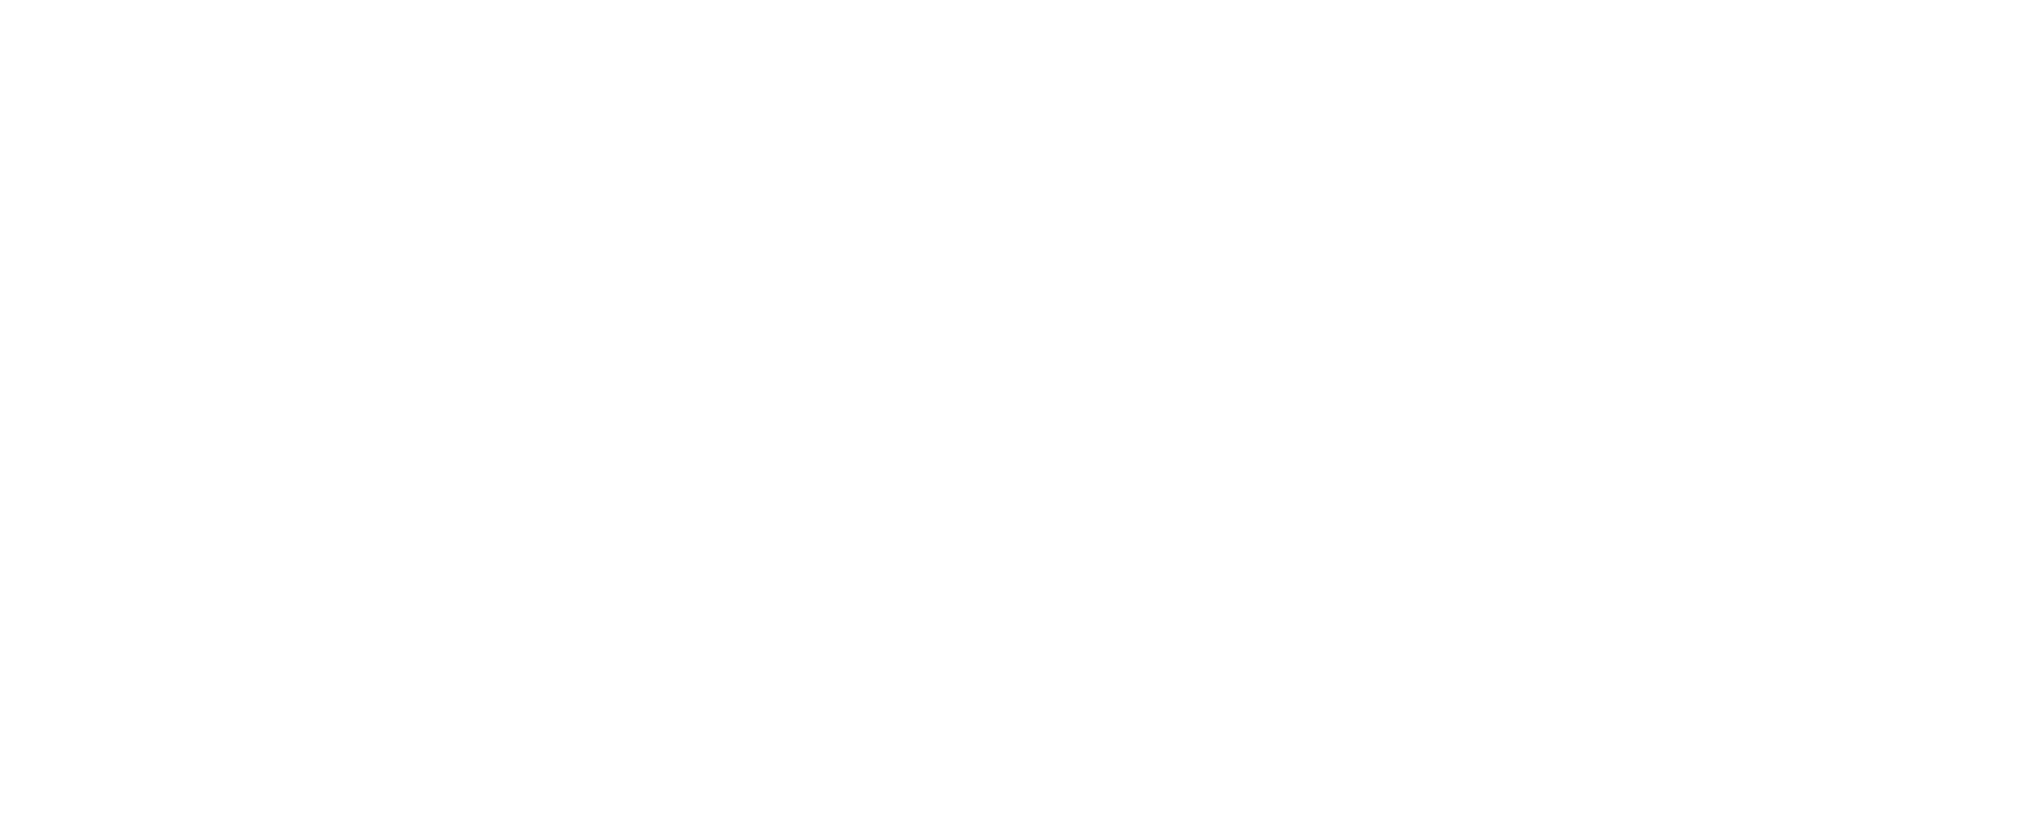 ENERGY MENTOR v. Mette Rud